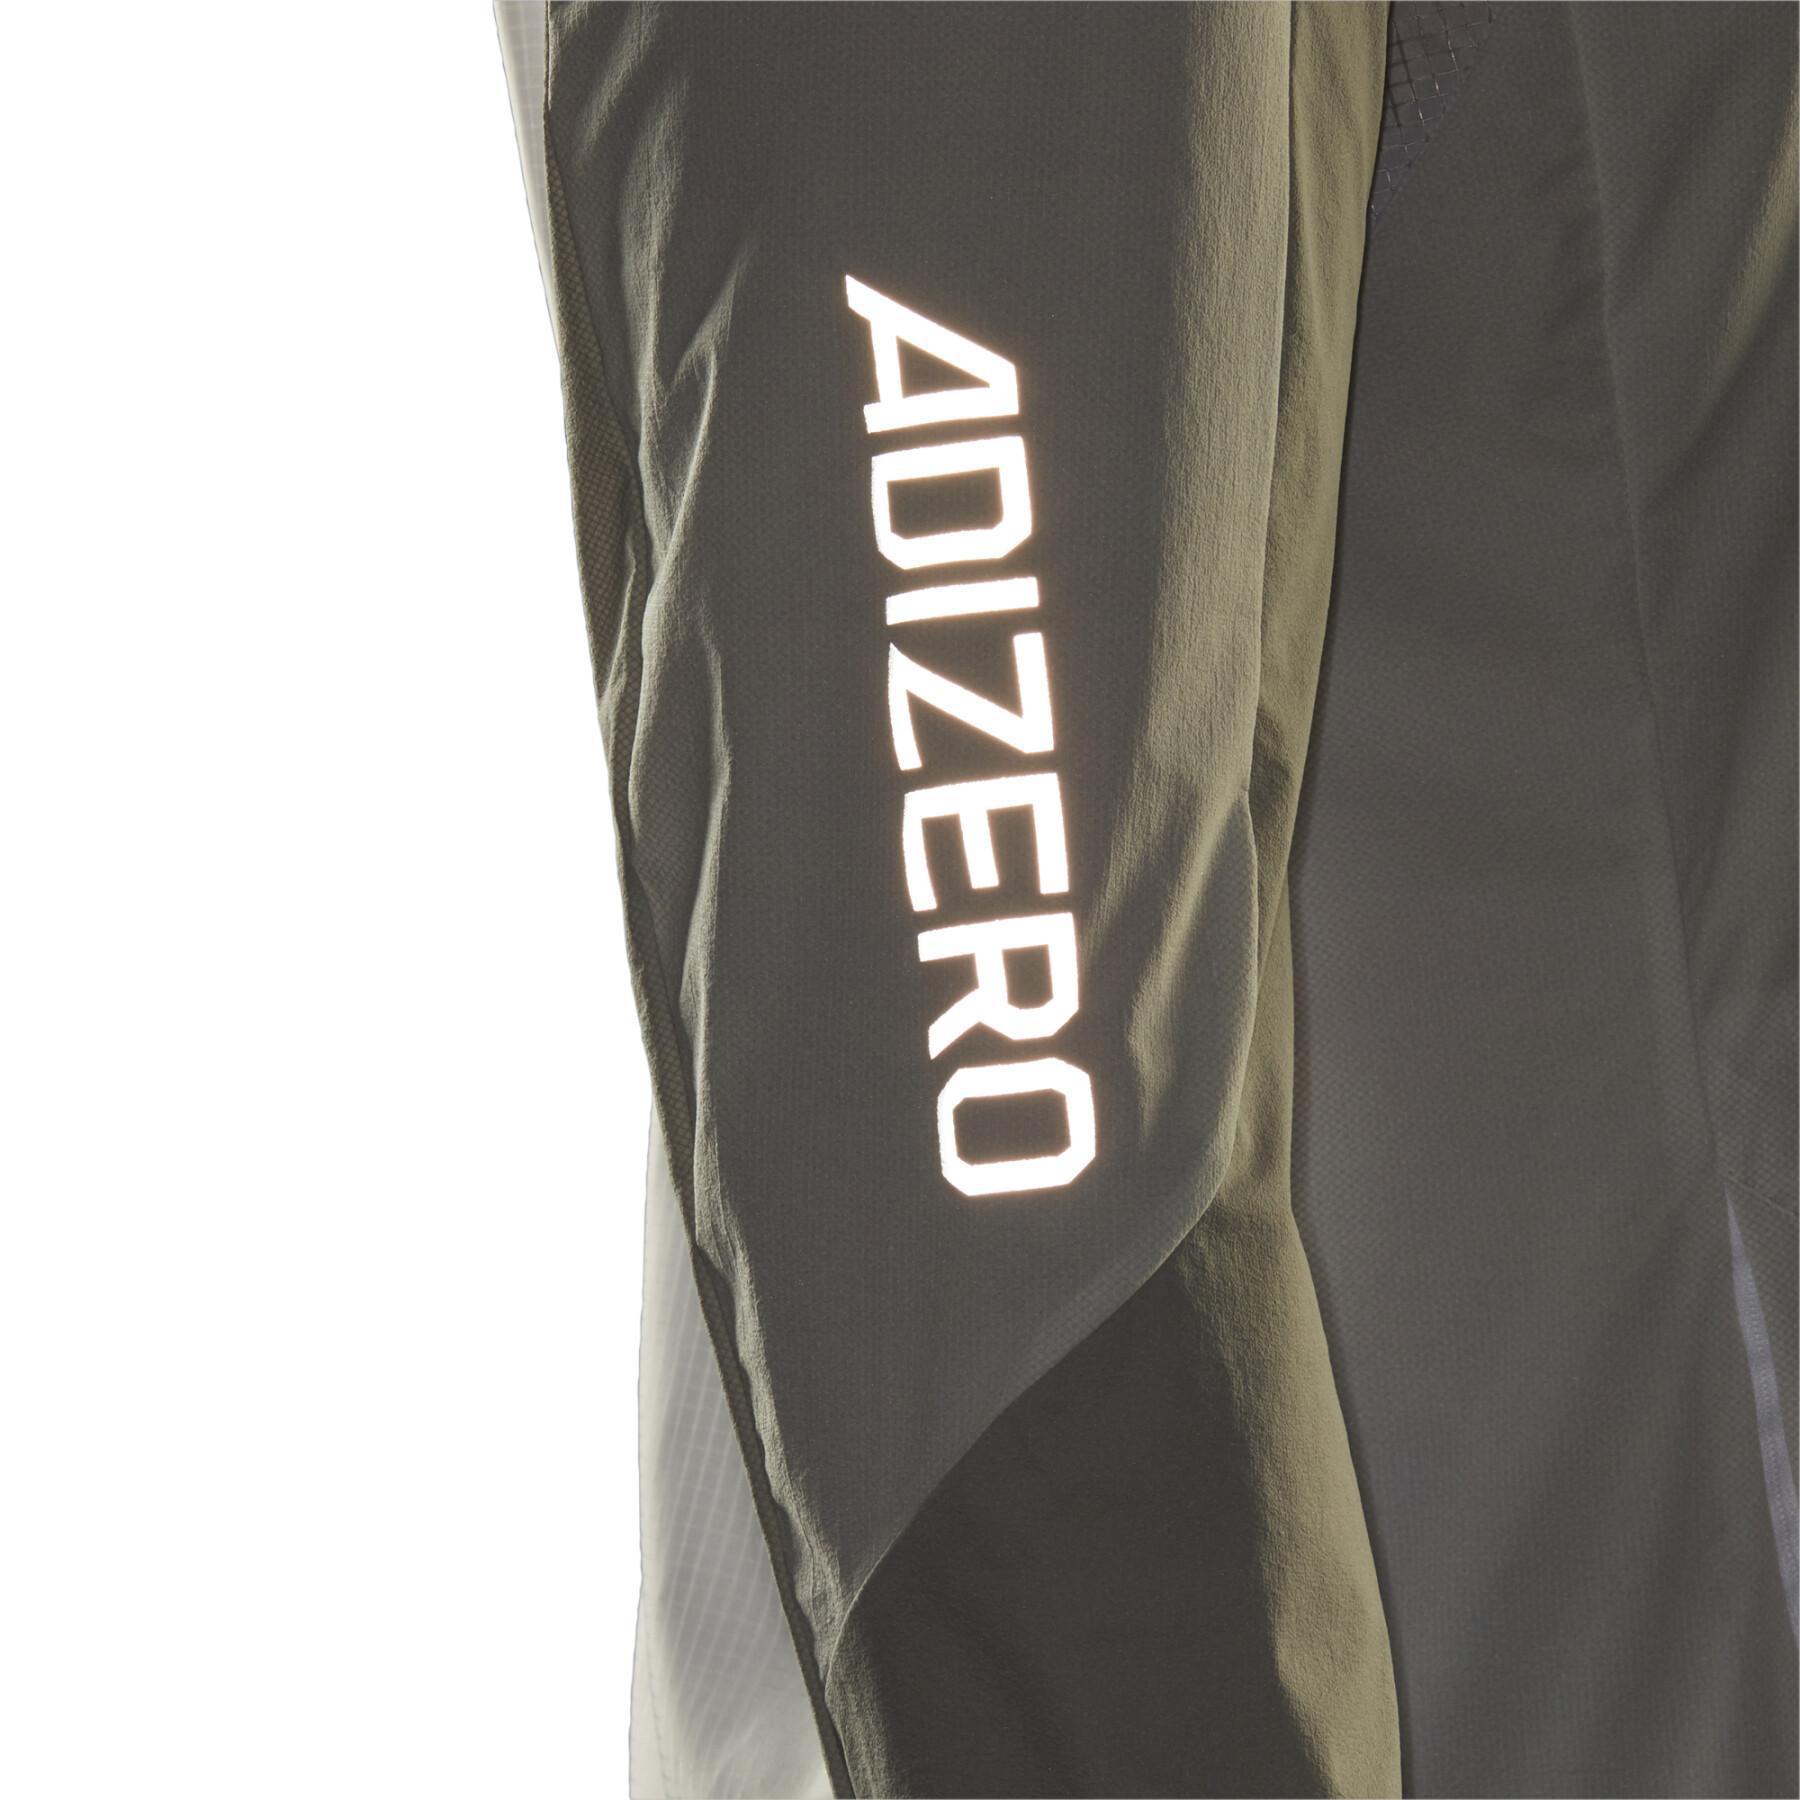 Jacket adidas Adizero Marathon